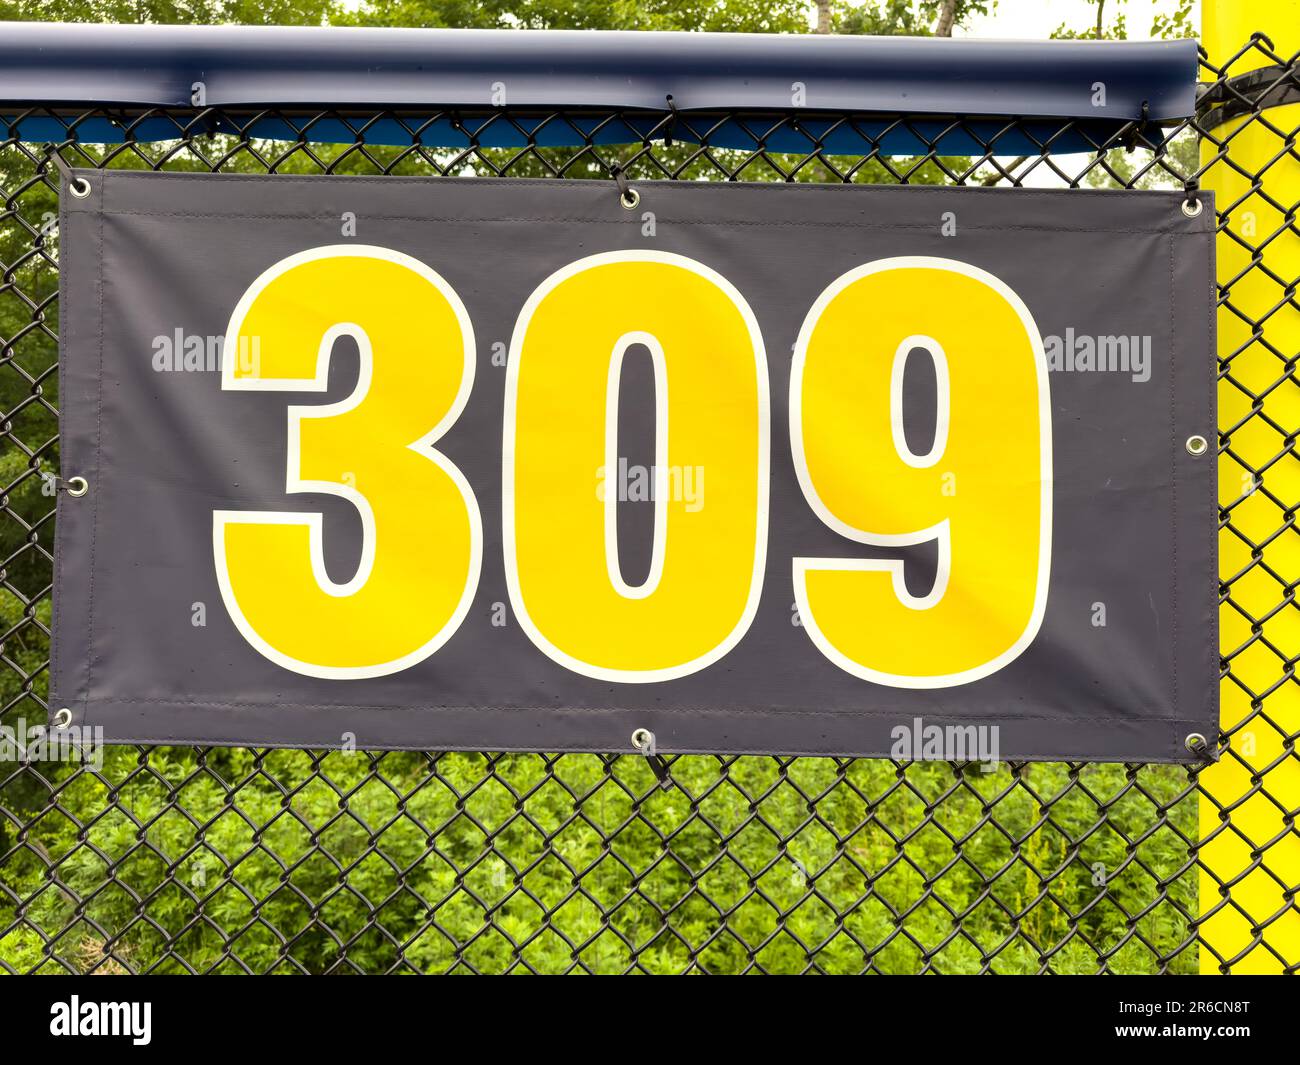 309 piedi ft campo da baseball segno di distanza in giallo e nero montato sulla recinzione di vinile nero. Foto Stock